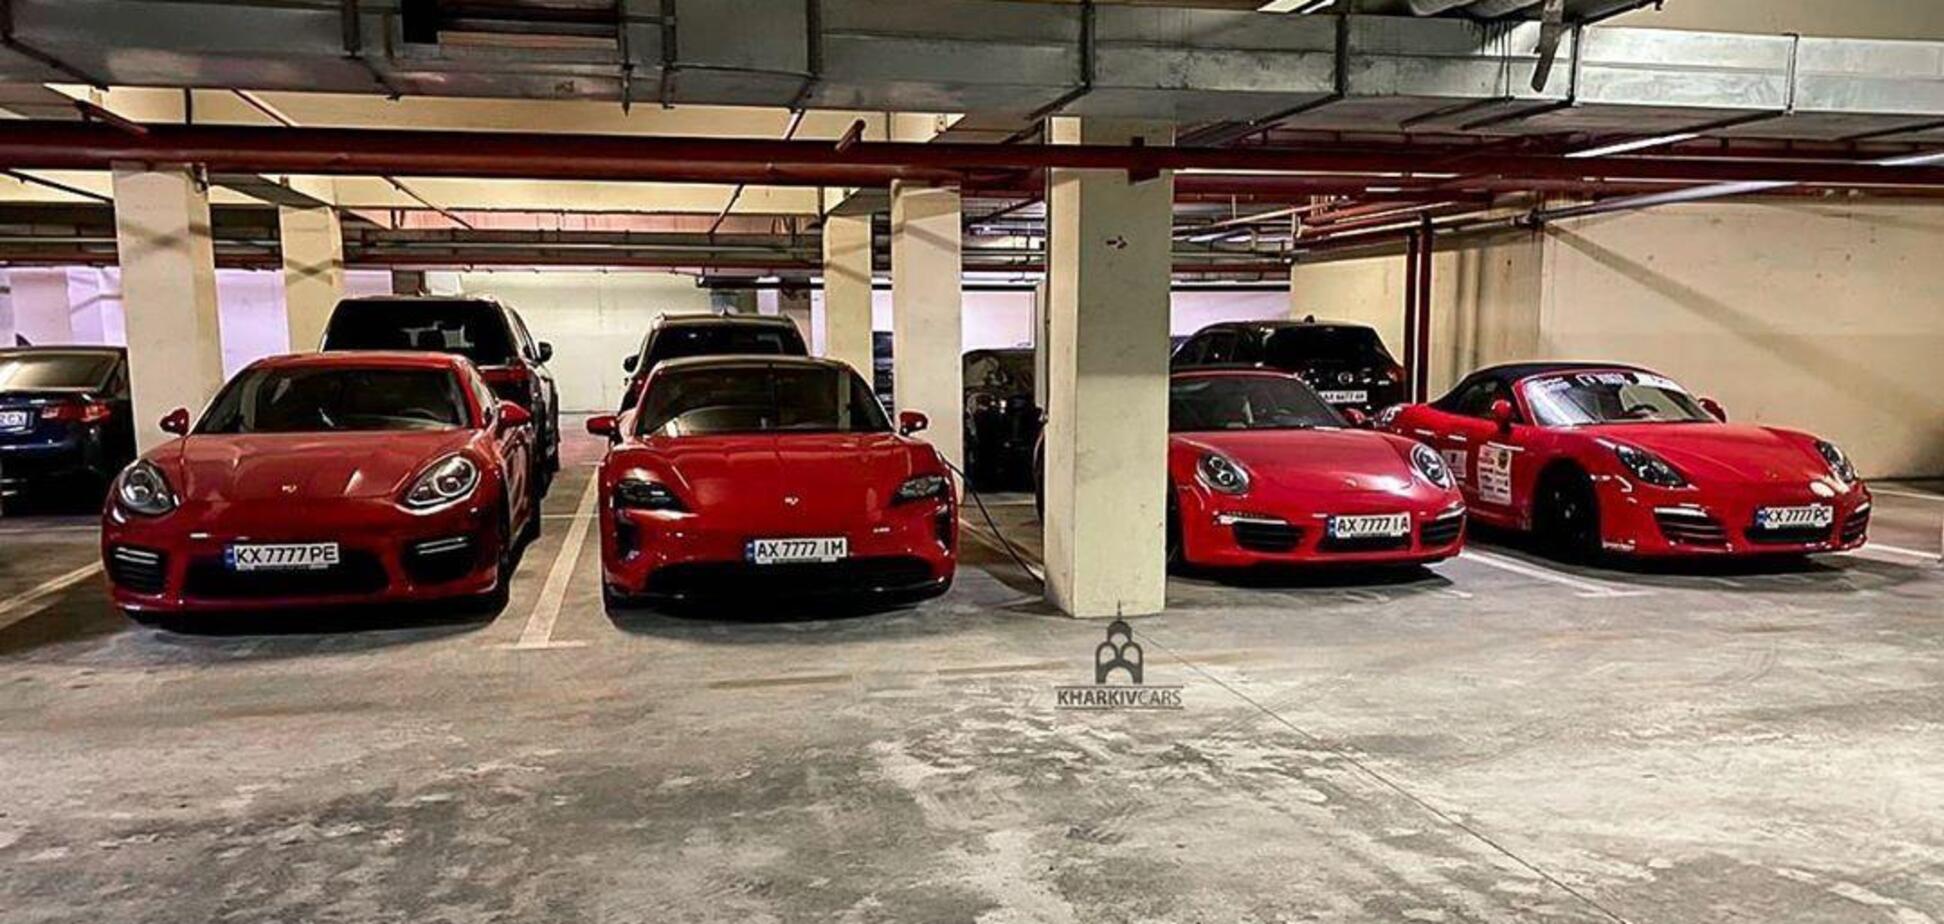 На підземному паркінгу в Харкові зняли вражаючу колекцію Porsche